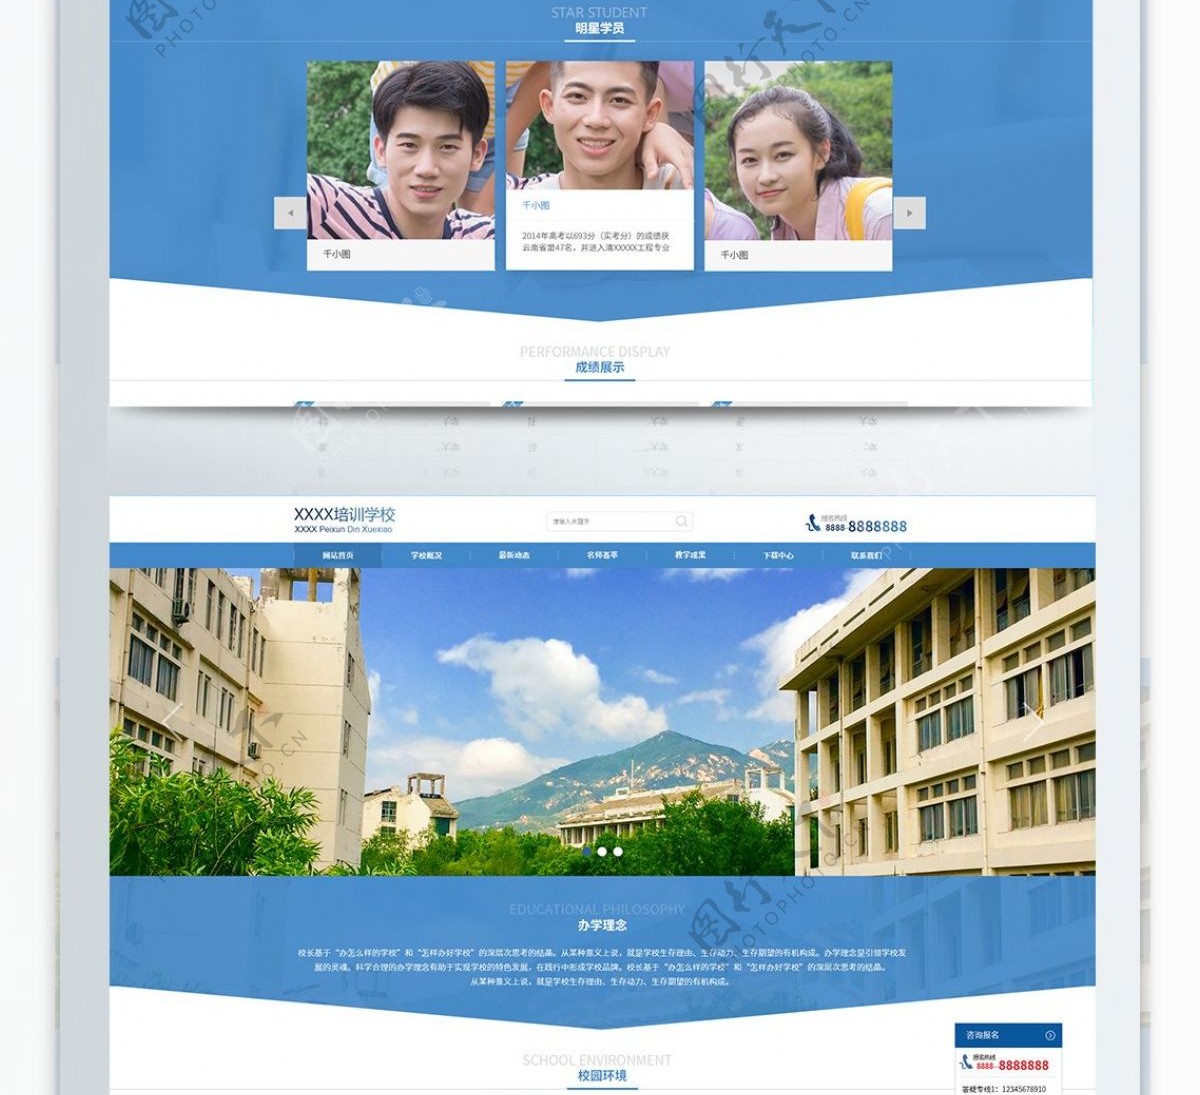 教育机构网站首页